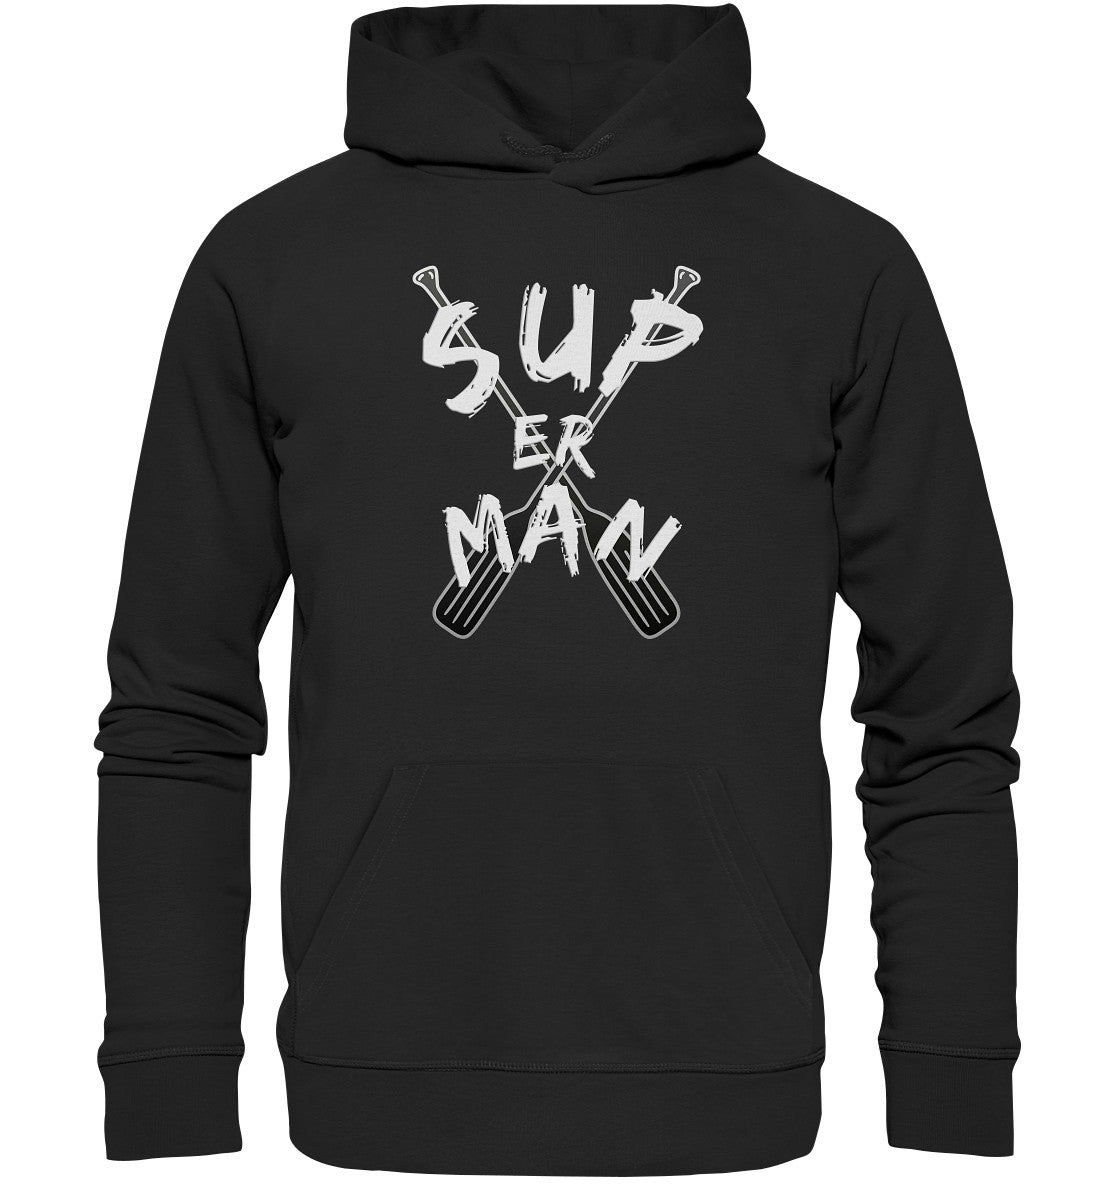 SUPer Man - Premium Unisex Hoodie